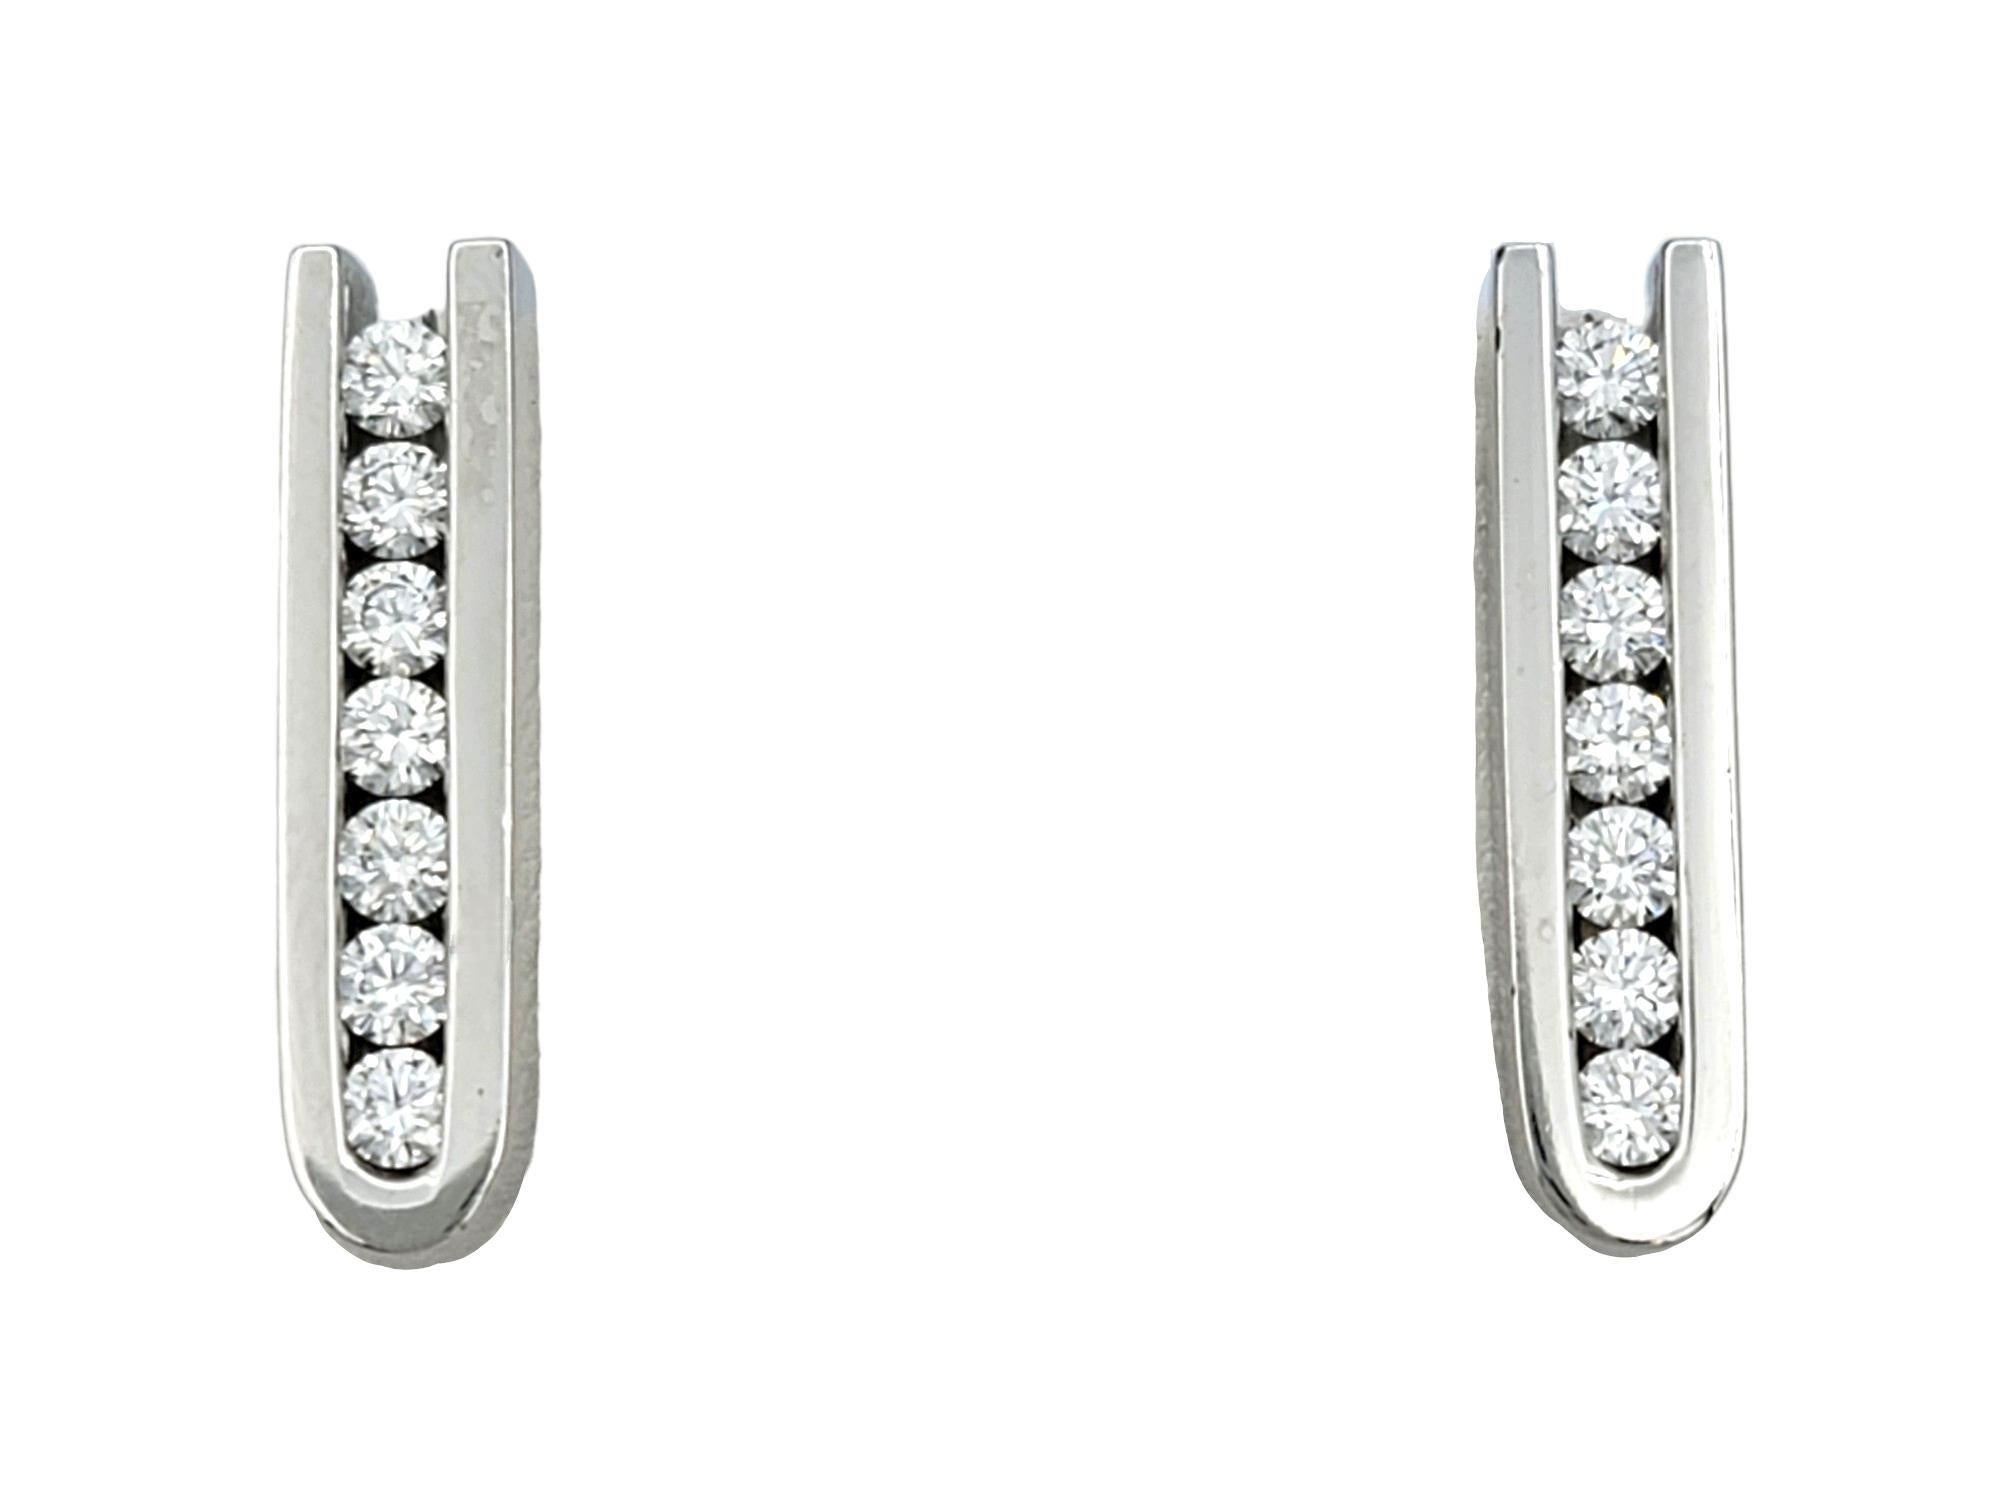 Cet élégant ensemble de boucles d'oreilles pendantes en or blanc et diamants, conçu par Scott Gauthier, est un véritable témoignage de sophistication raffinée. Chaque boucle d'oreille présente une rangée verticale de sept diamants éblouissants,